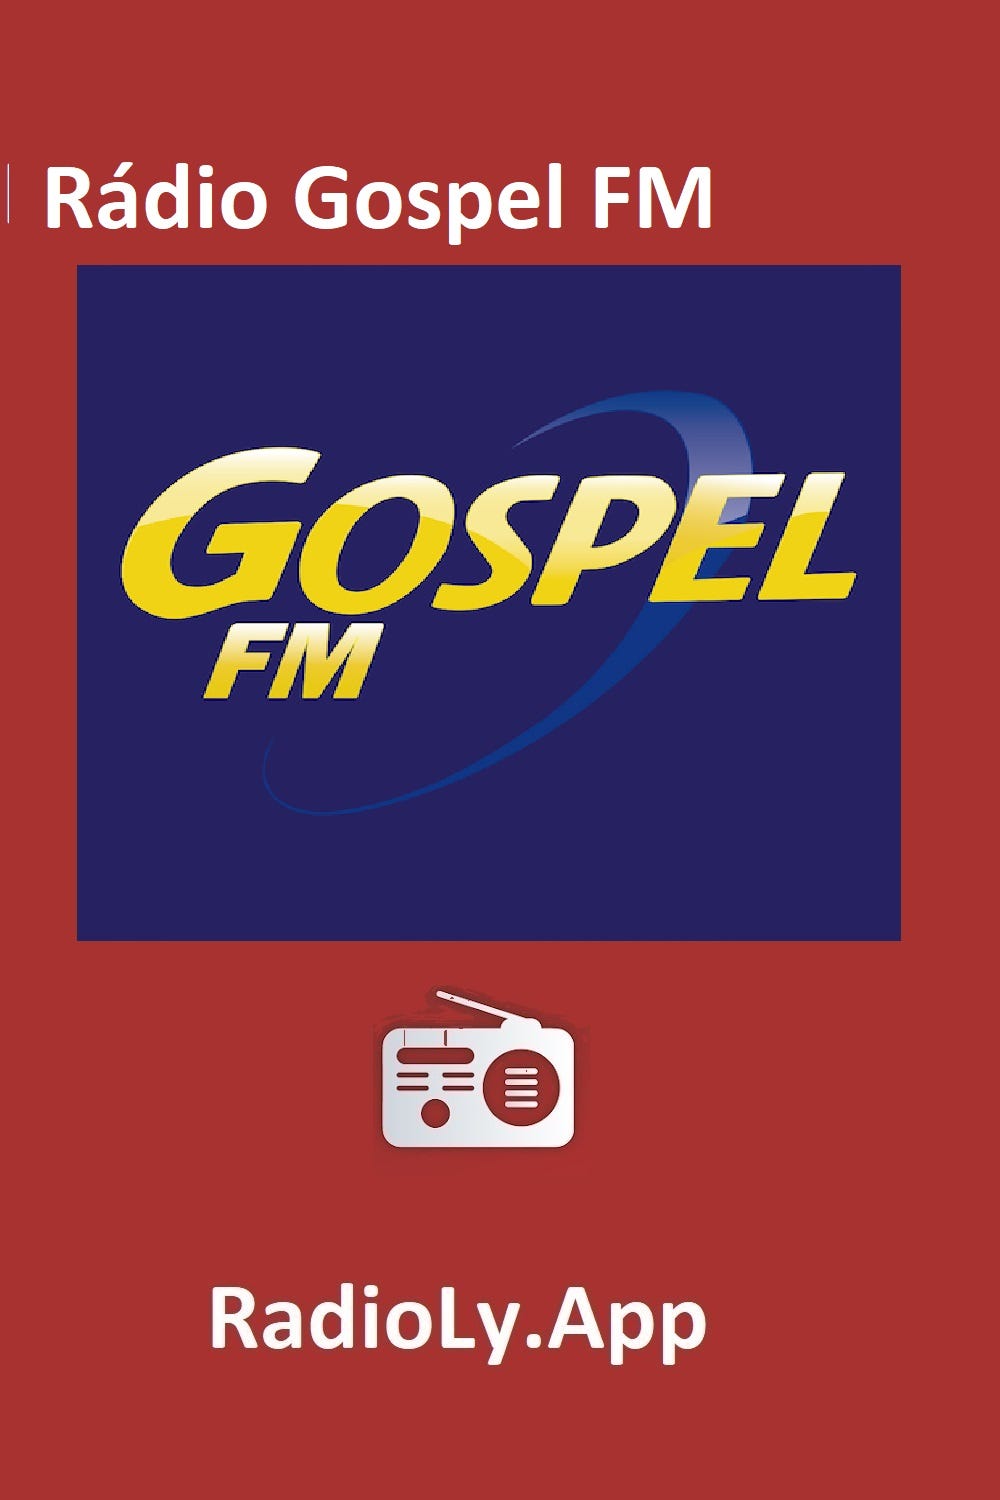 Rádio Gospel FM- Brazil Radio Station Online — RadiolyApp - Radioly - Medium